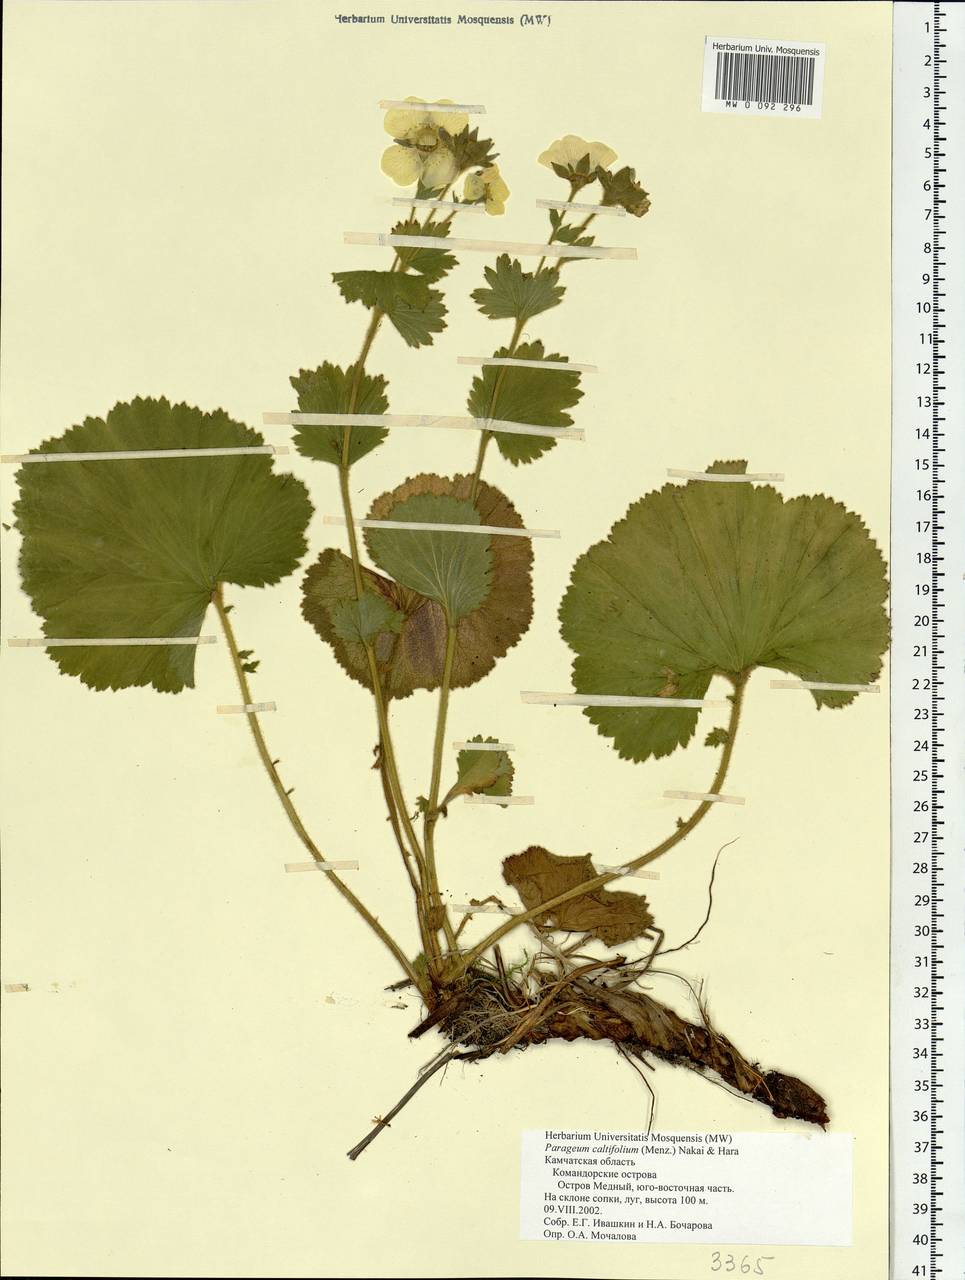 Geum calthifolium subsp. calthifolium, Siberia, Chukotka & Kamchatka (S7) (Russia)